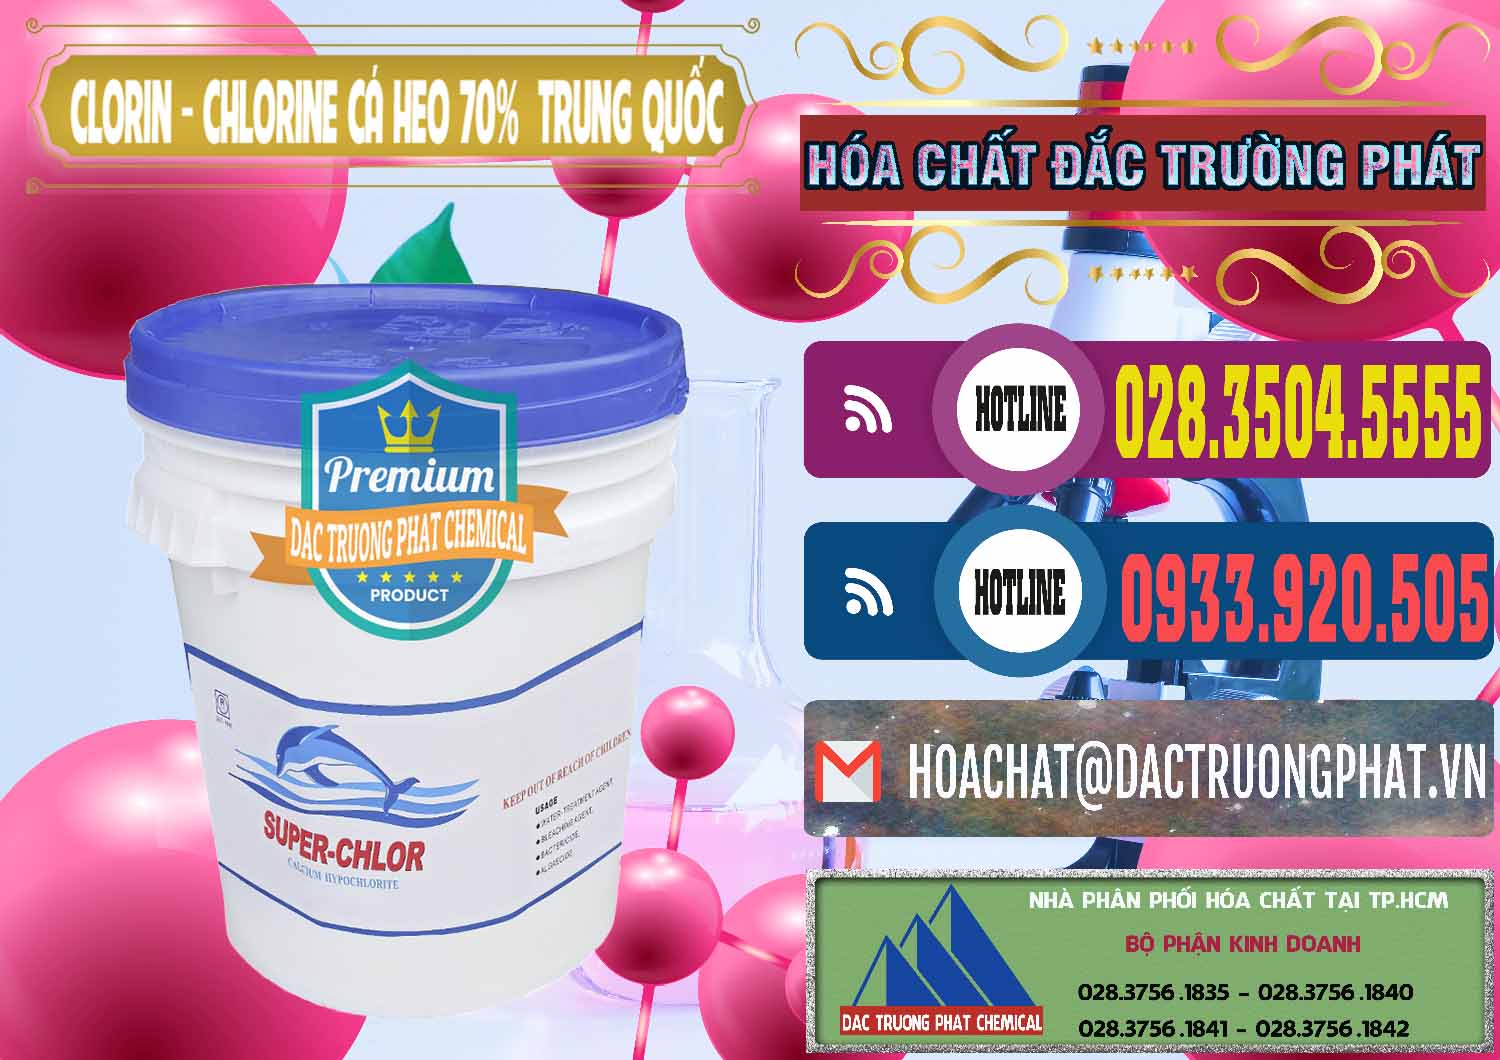 Đơn vị chuyên kinh doanh & bán Clorin - Chlorine Cá Heo 70% Super Chlor Nắp Xanh Trung Quốc China - 0209 - Công ty cung cấp _ nhập khẩu hóa chất tại TP.HCM - muabanhoachat.com.vn